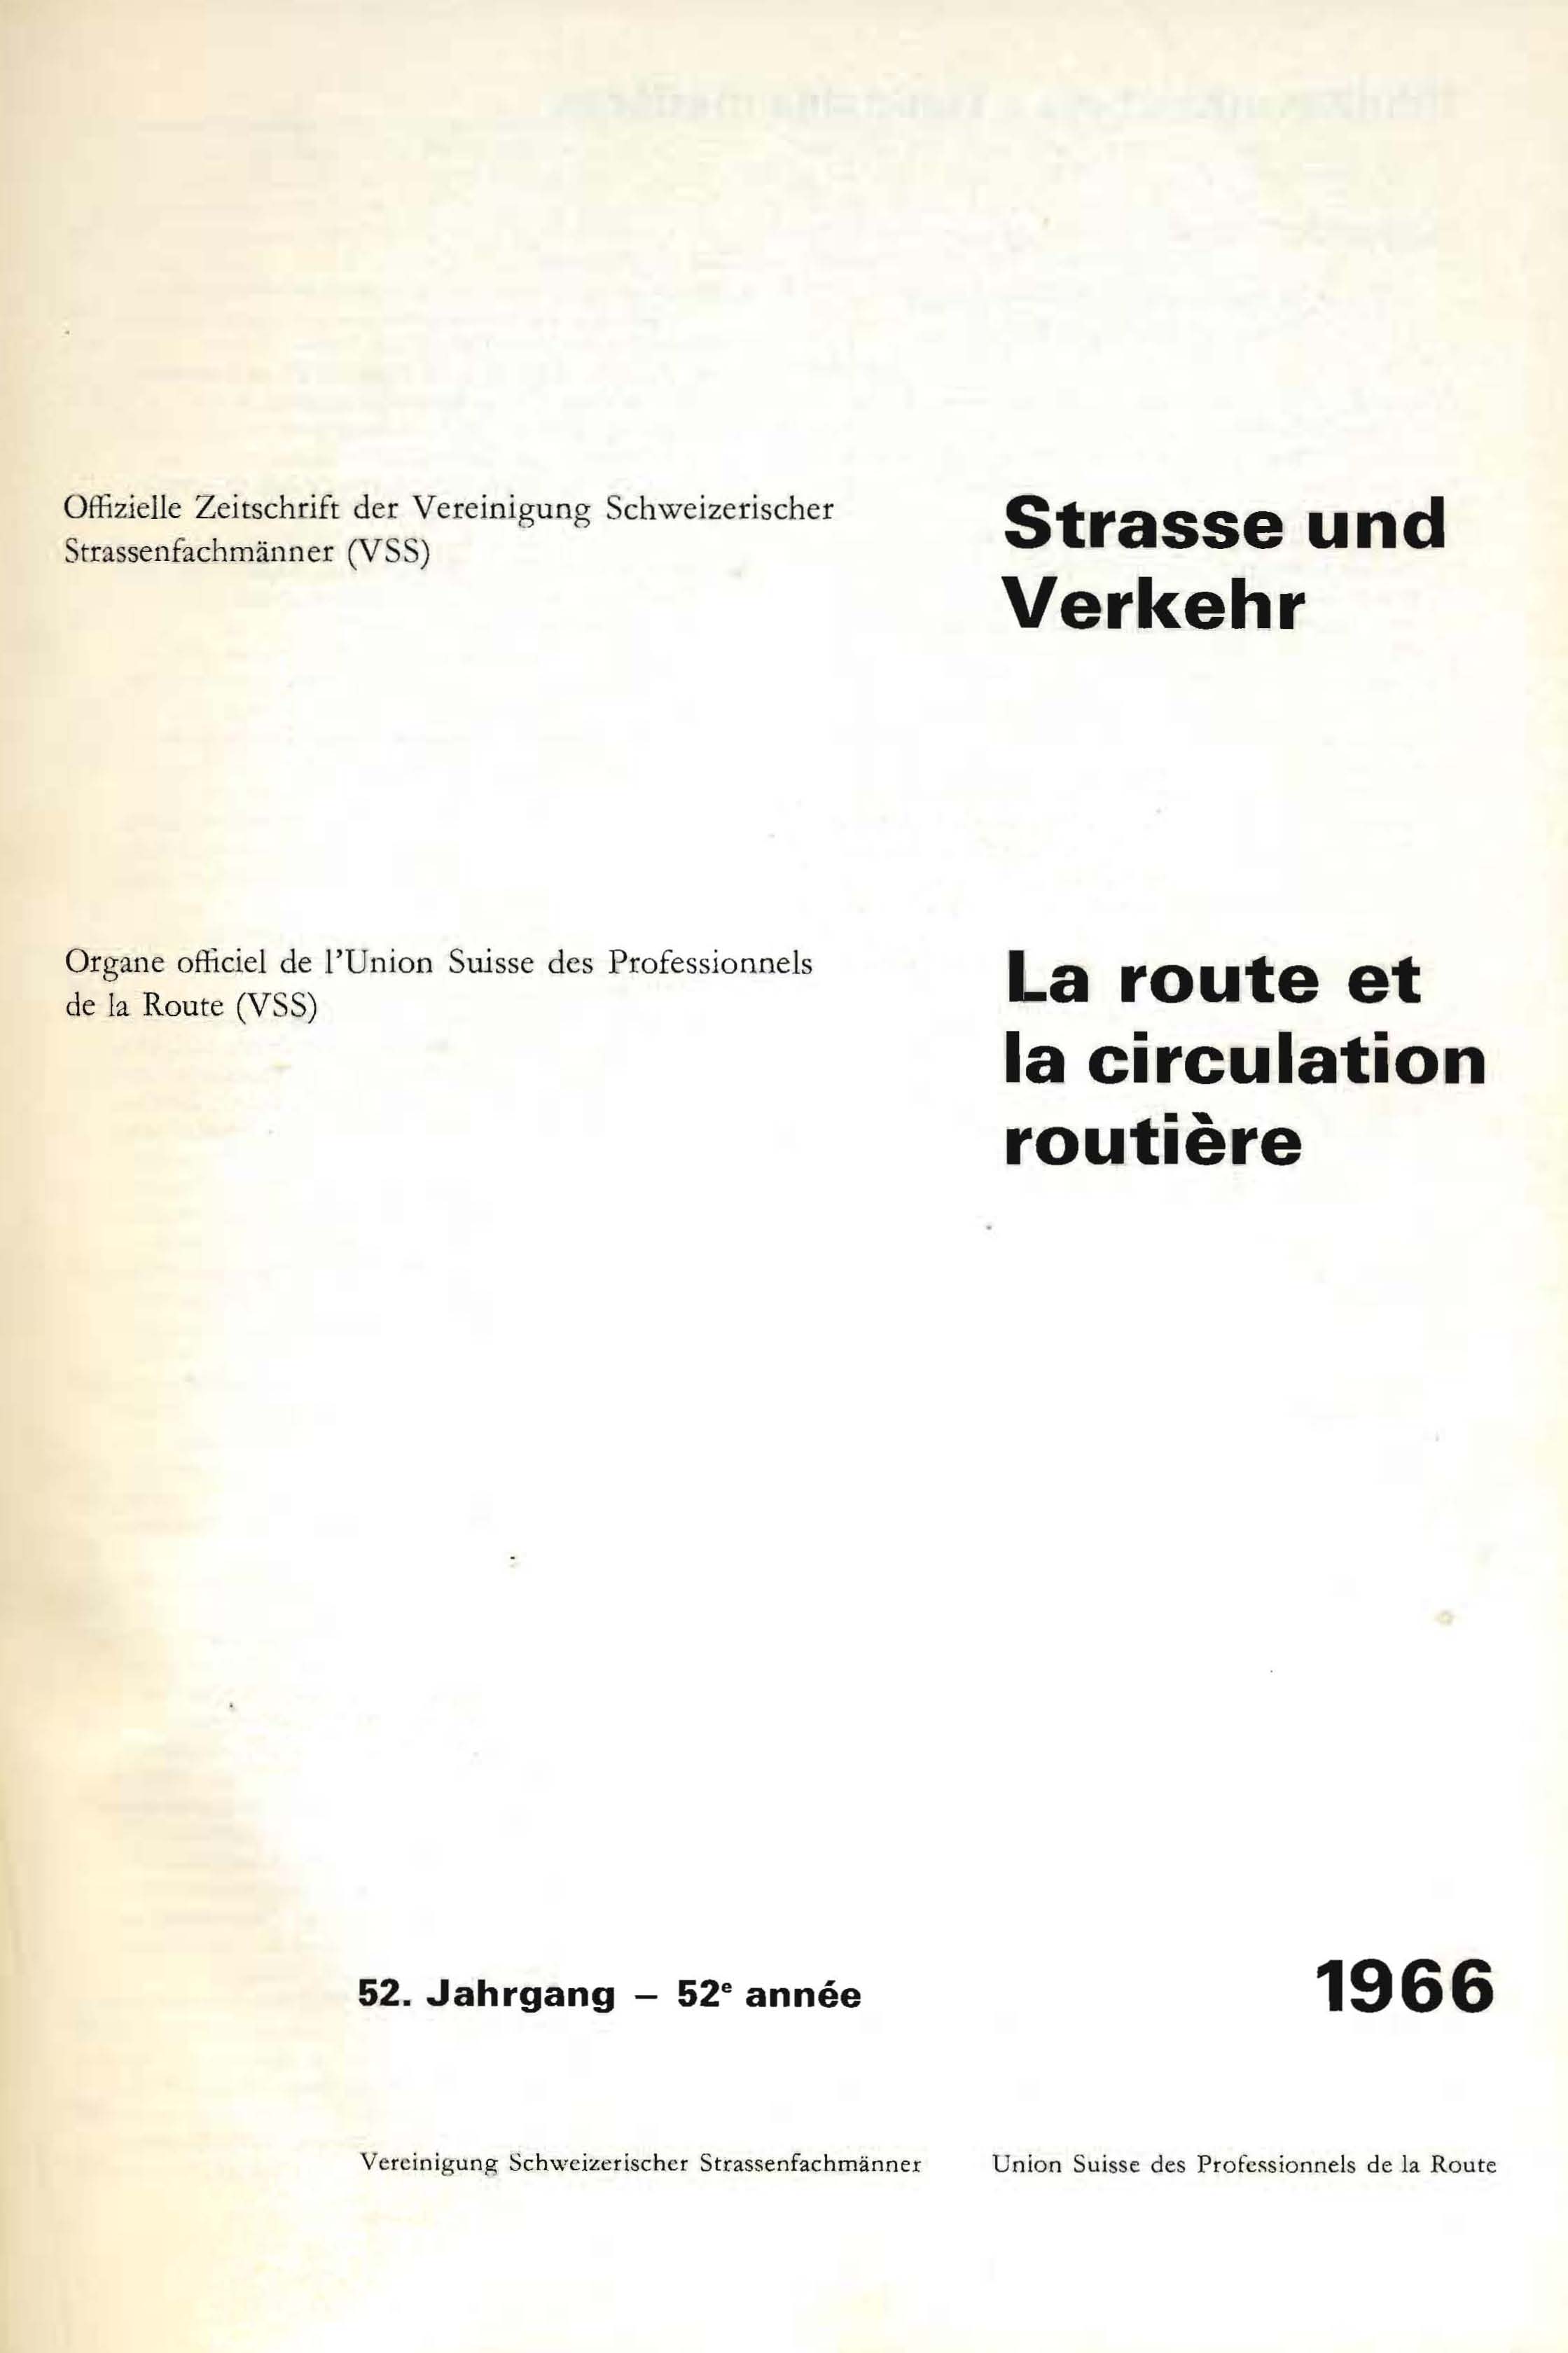 Strasse und Verkehr, 52. Jahrgang 1966